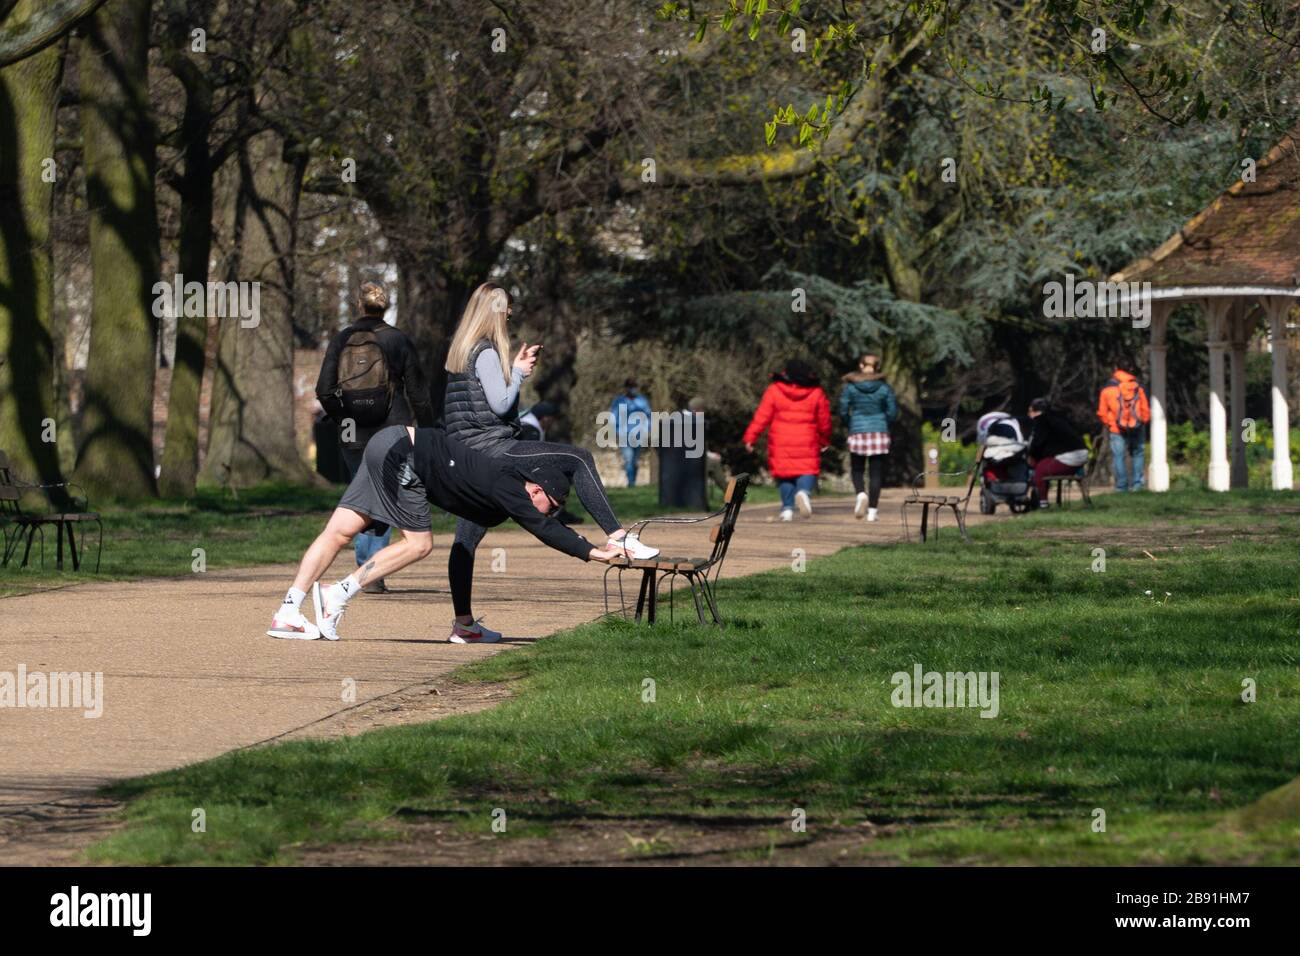 London, Großbritannien. Montag, 23. März 2020. Menschen, die in einem Ealing-Park trainieren, da die Regierung mögliche Maßnahmen sieht, um Menschen beim Aussteigen zu stoppen. Foto: Roger Garfield/Alamy Live News Stockfoto